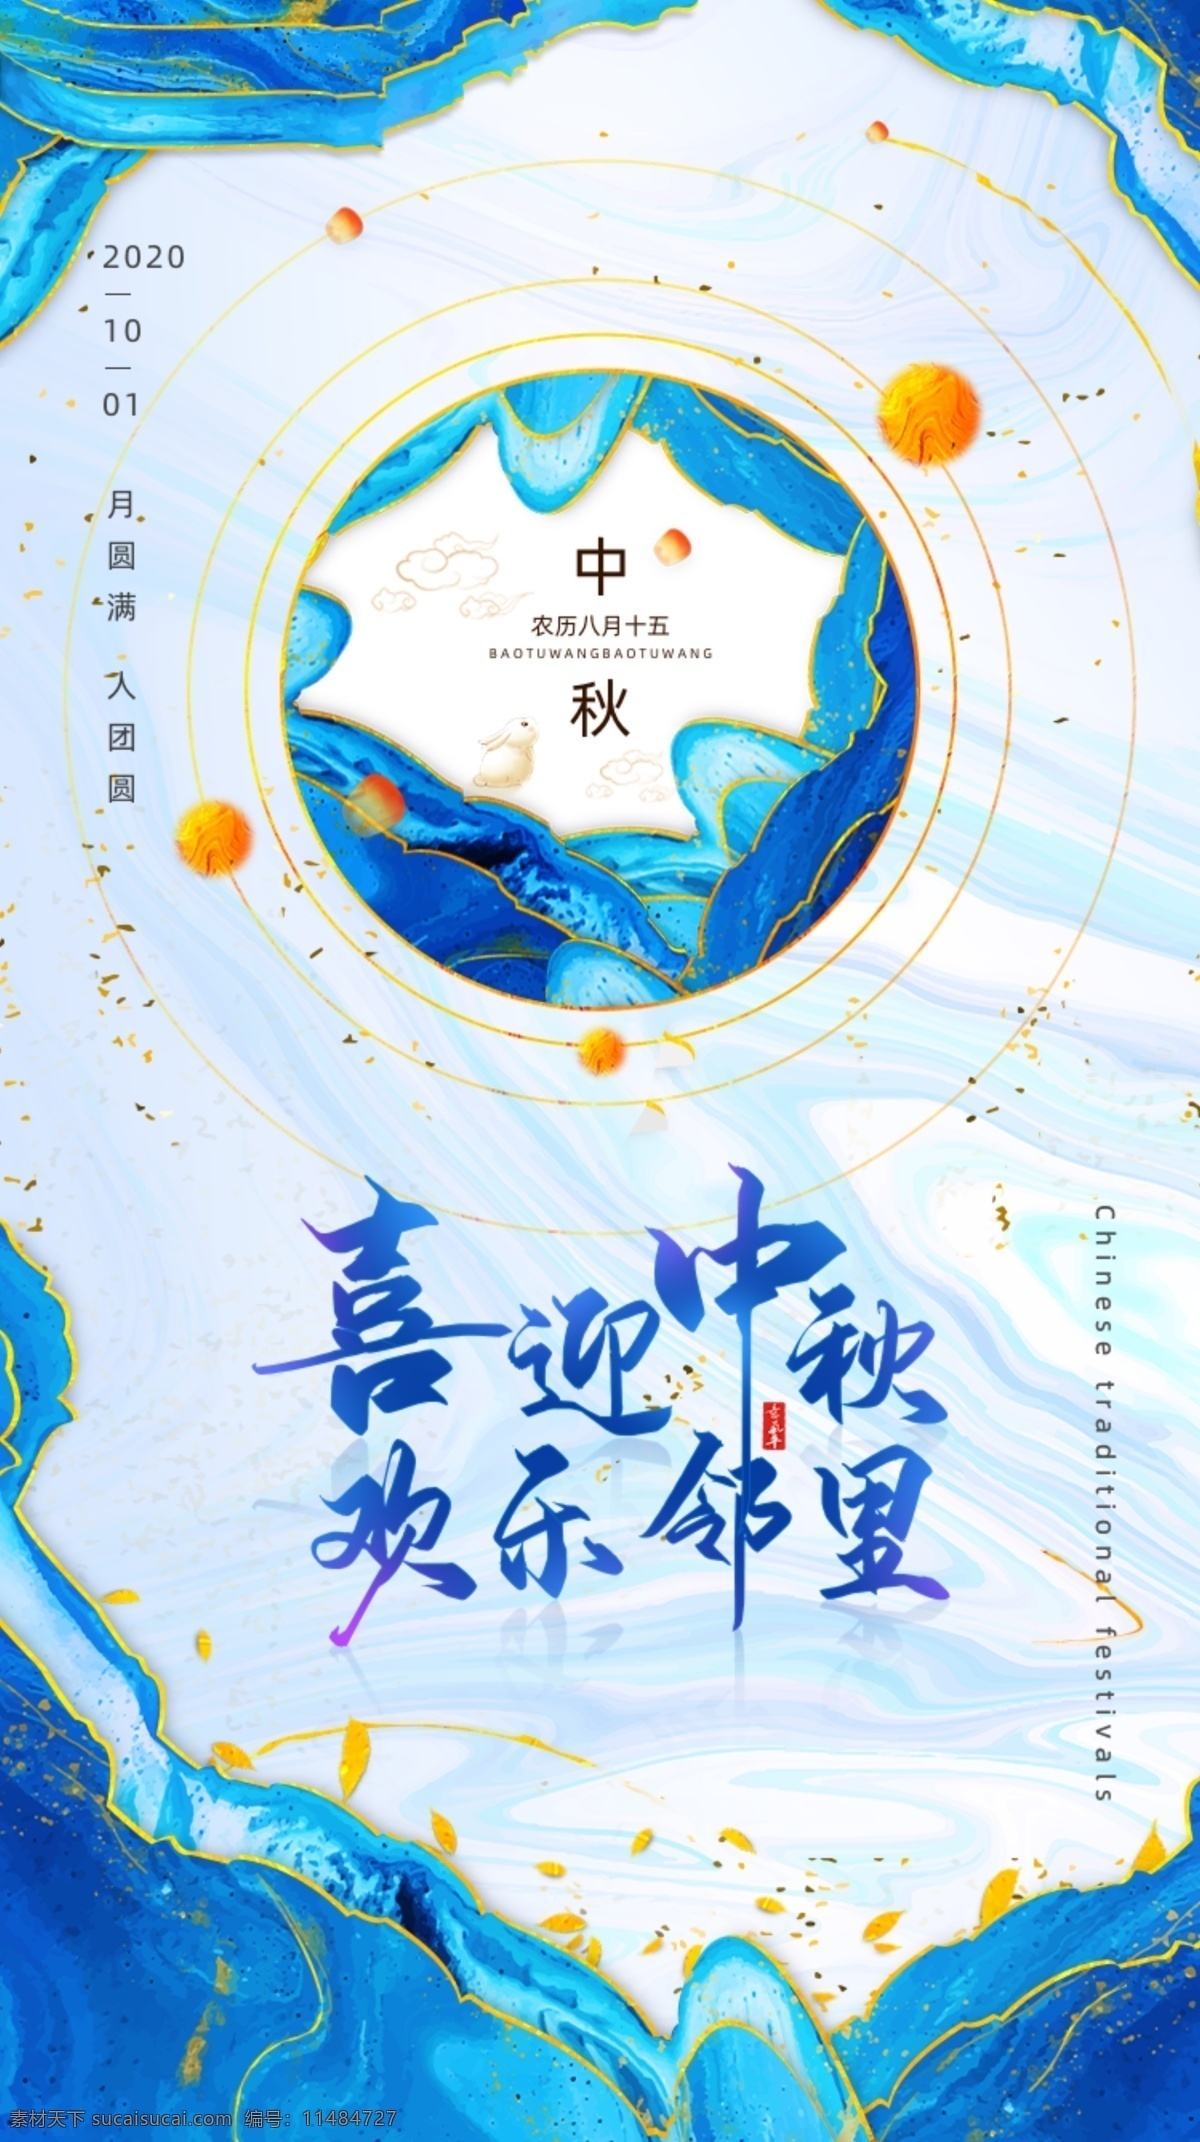 创意 中 国风 鎏金 水墨 中秋节 手机 中国风 海报 启动页 vi设计